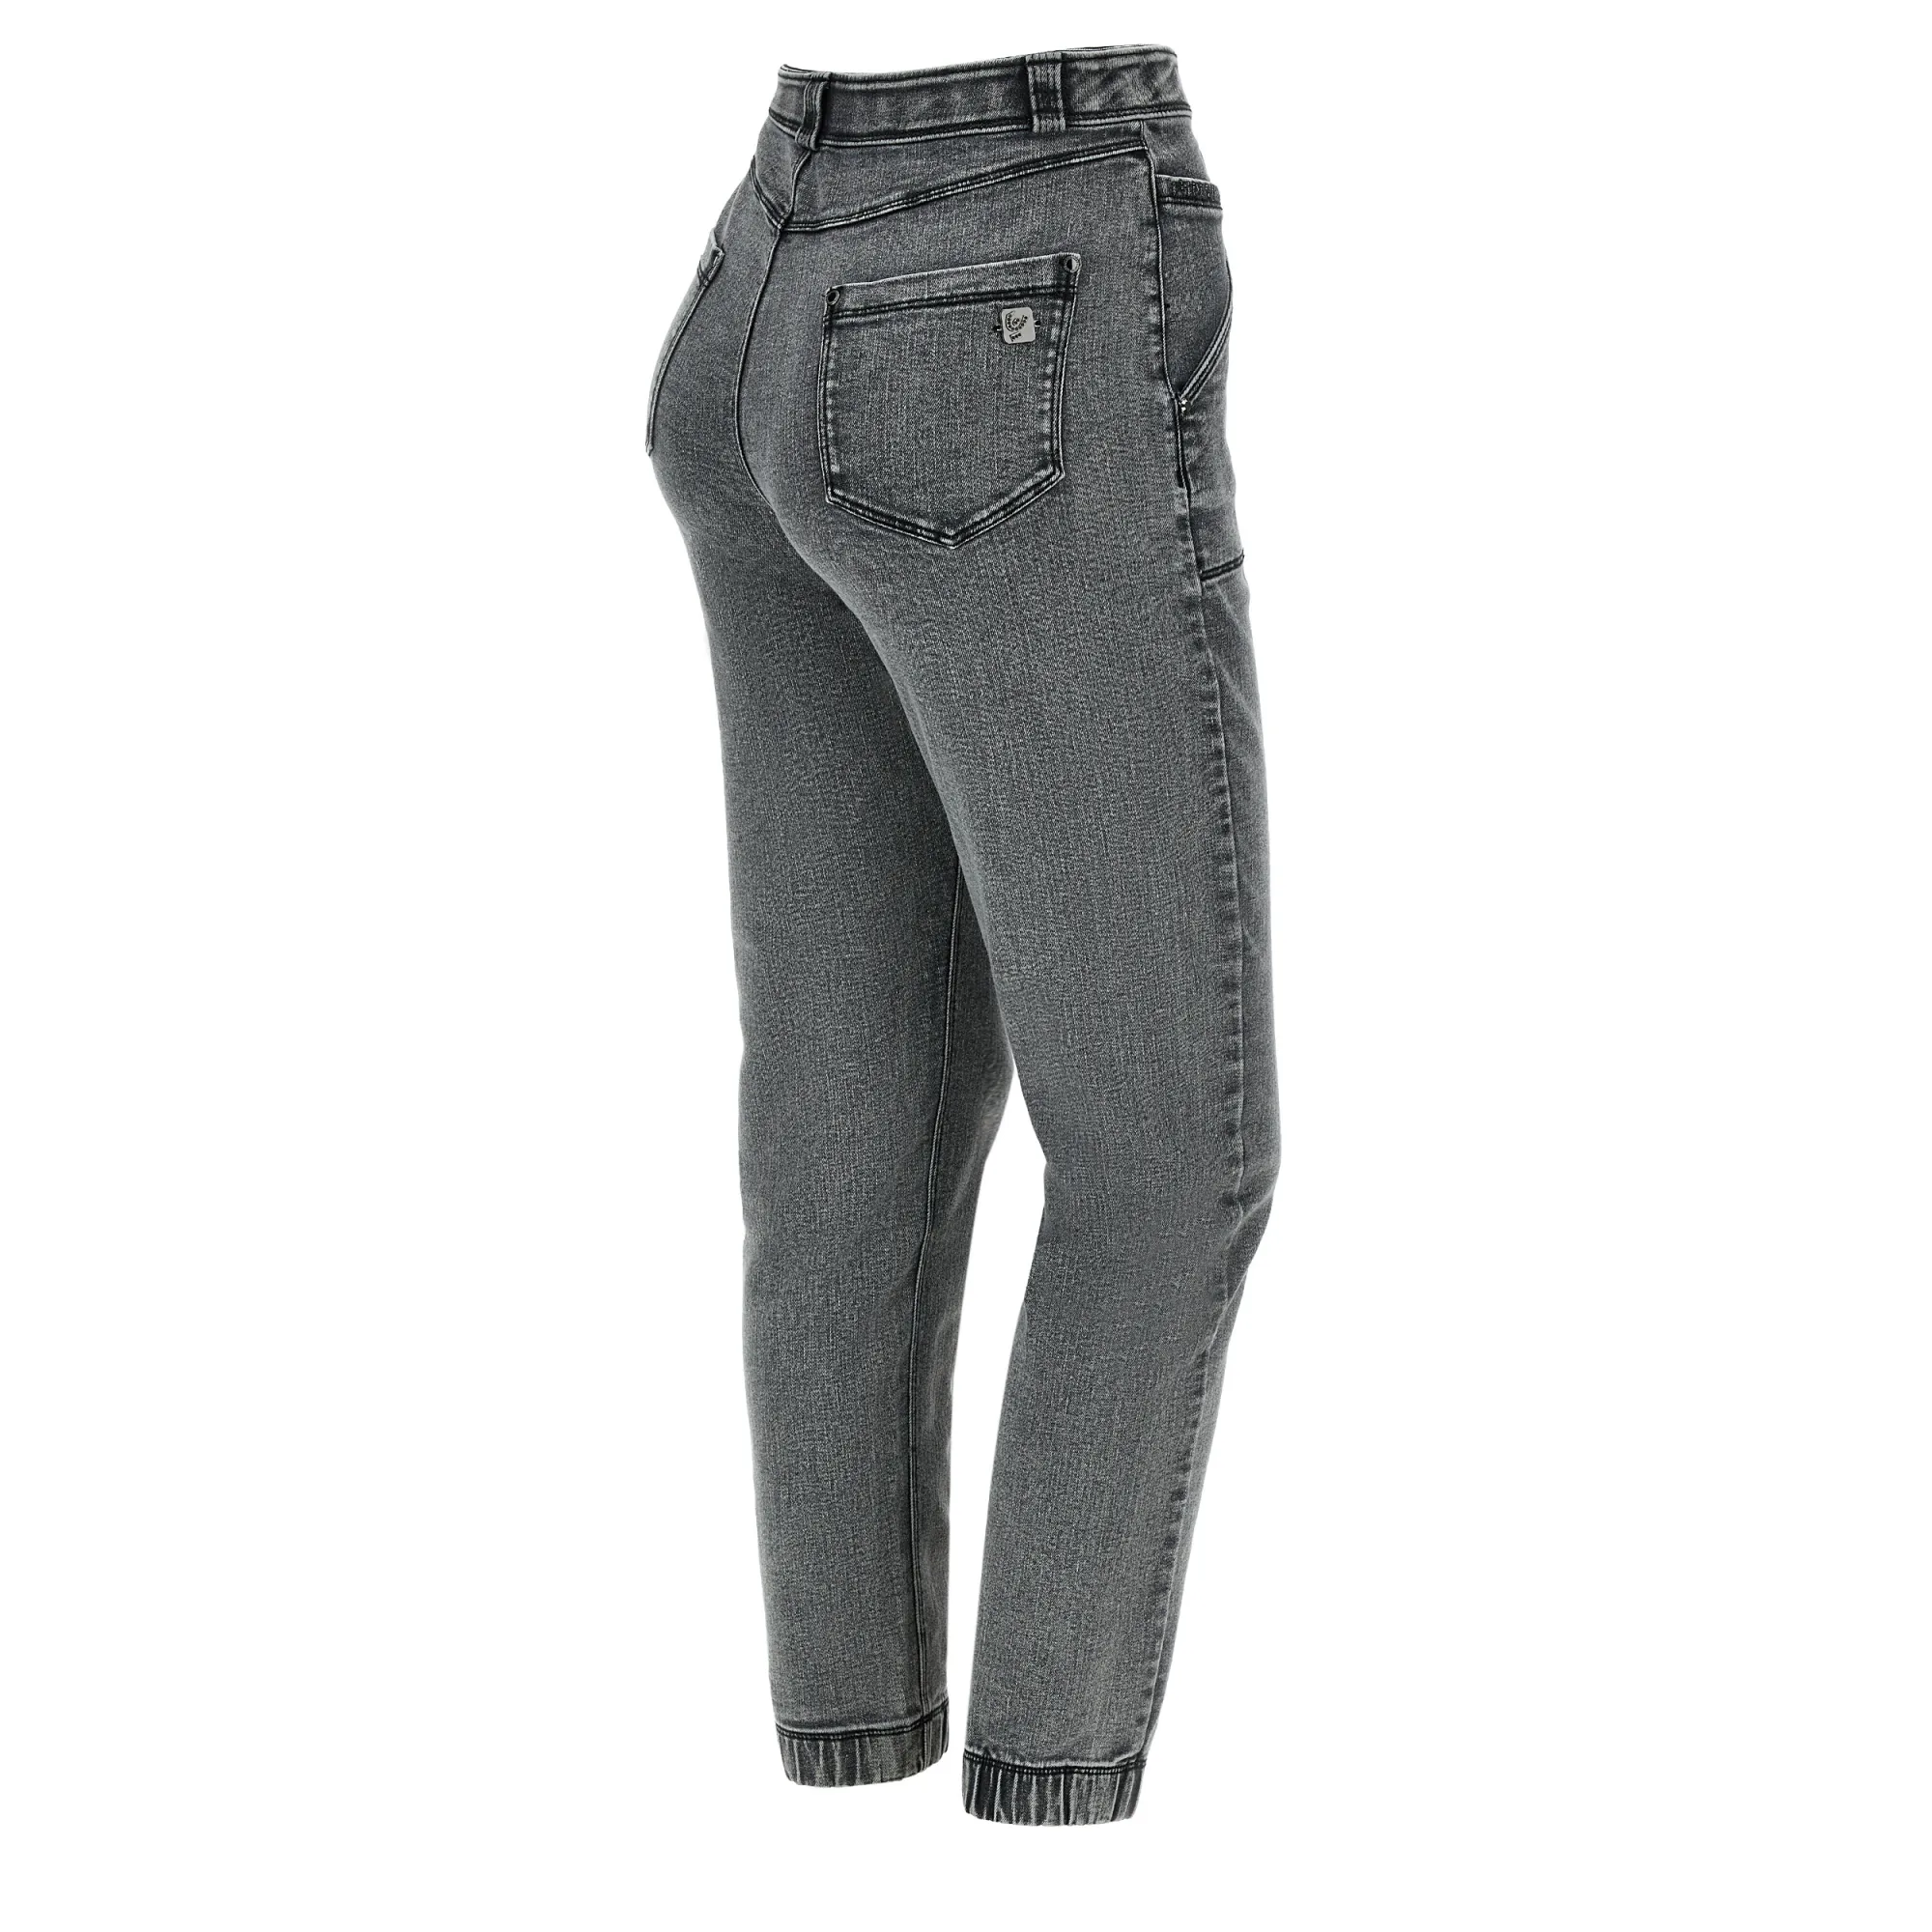 Freddy Fit Jeans - 7/8 High Waist Straight - Washed Grey - Black Seam - J3N